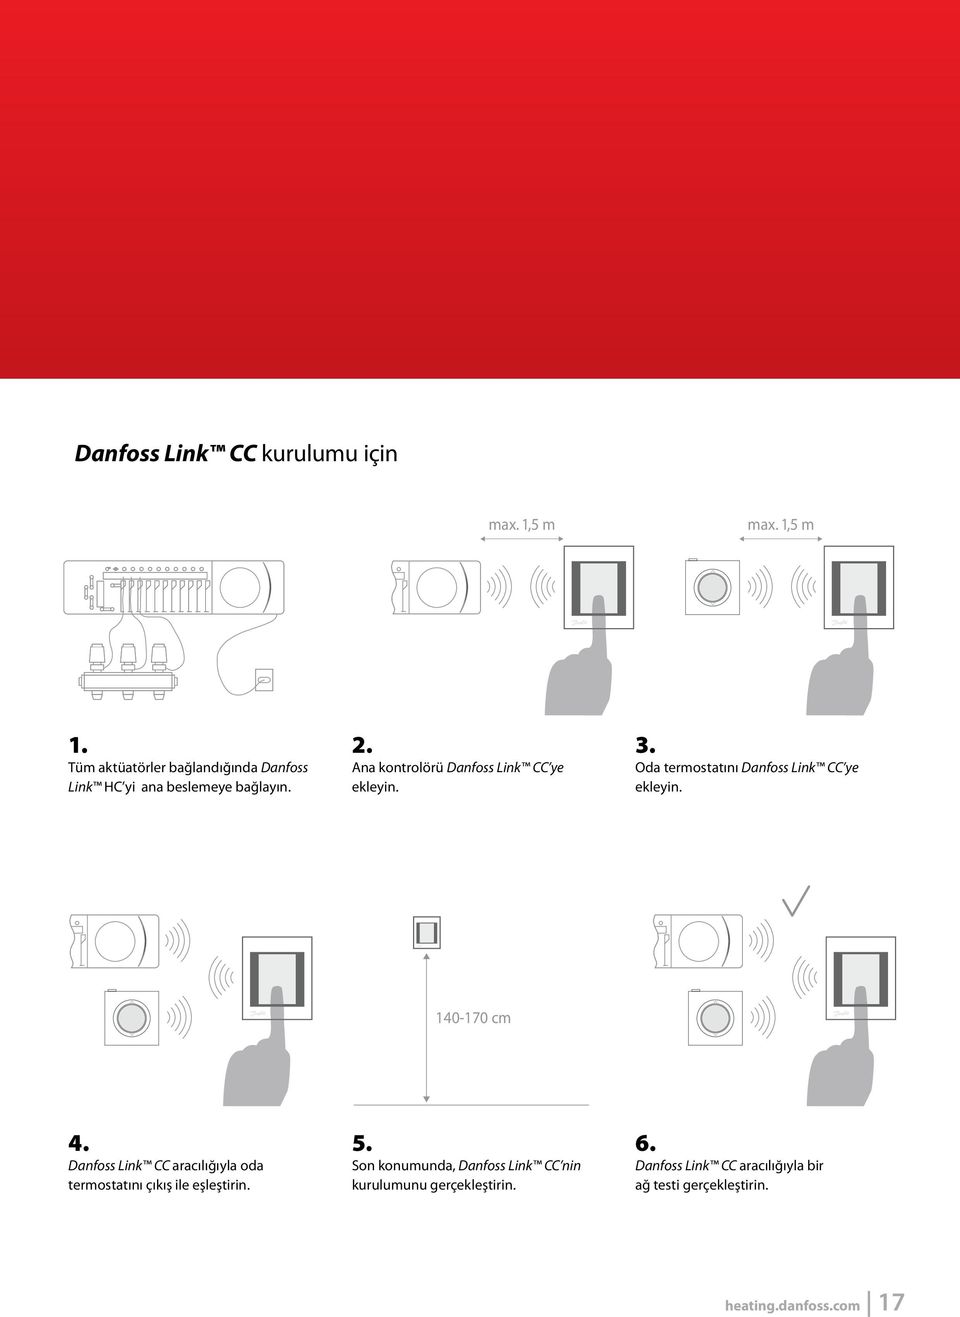 Ana kontrolörü Danfoss Link CC ye ekleyin. 3. Oda termostatını Danfoss Link CC ye ekleyin. 140-170 cm 4.